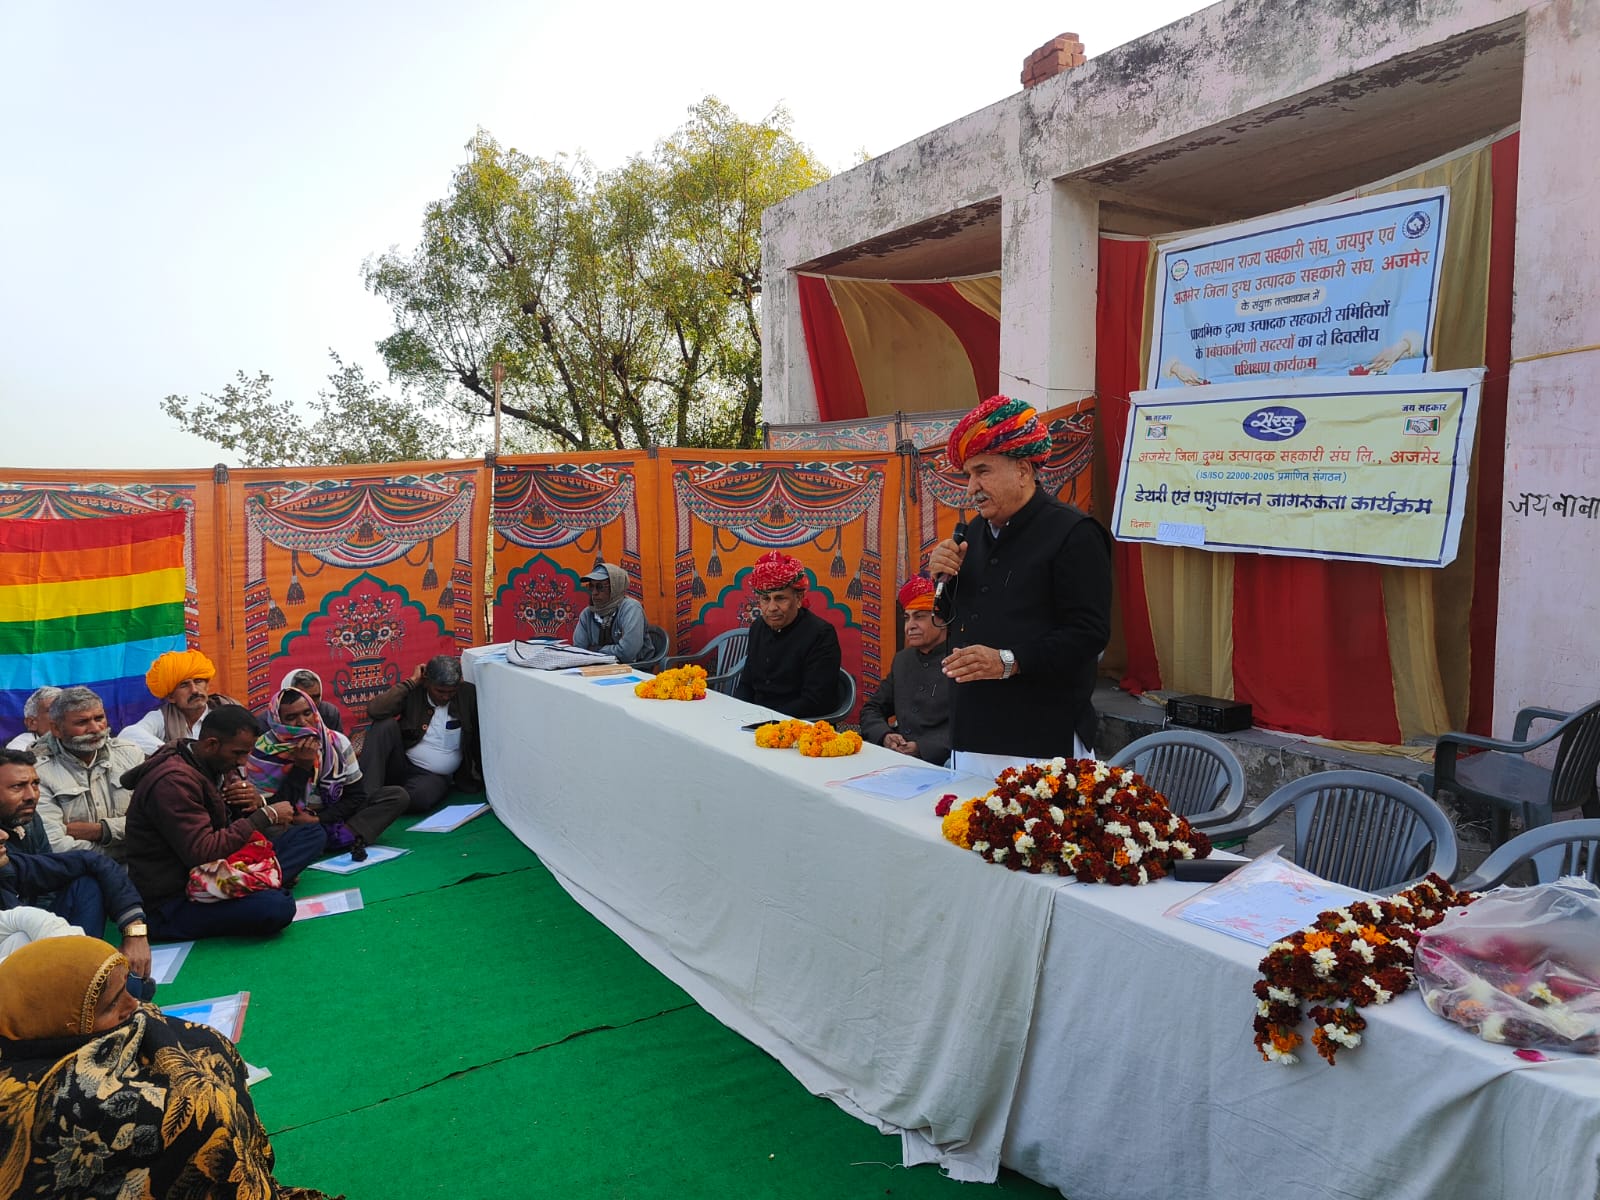 राजस्थान राज्य सहकारी संघ, जयपुर एवम अजमेर जिला दुग्ध उत्पादक सहकारी संघ अजमेर के संयुक्त तत्वाधान में प्राथमिक दुग्ध उत्पादक सहकारी समितियों के प्रबंधकारिणी सदस्यों का दो दिवसीय प्रशिक्षण कार्यक्रम के अंतर्गत दिनाक 7/01/2024 को ग्राम जालिया द्वितीय में कार्यक्रम आयोजित किया गया जिसमें राजस्थान राज्य सहकारी संघ जयपुर के प्रतिनिधि श्री शंकर शर्मा एवम शिवराम शर्मा ने अजमेर डेयरी